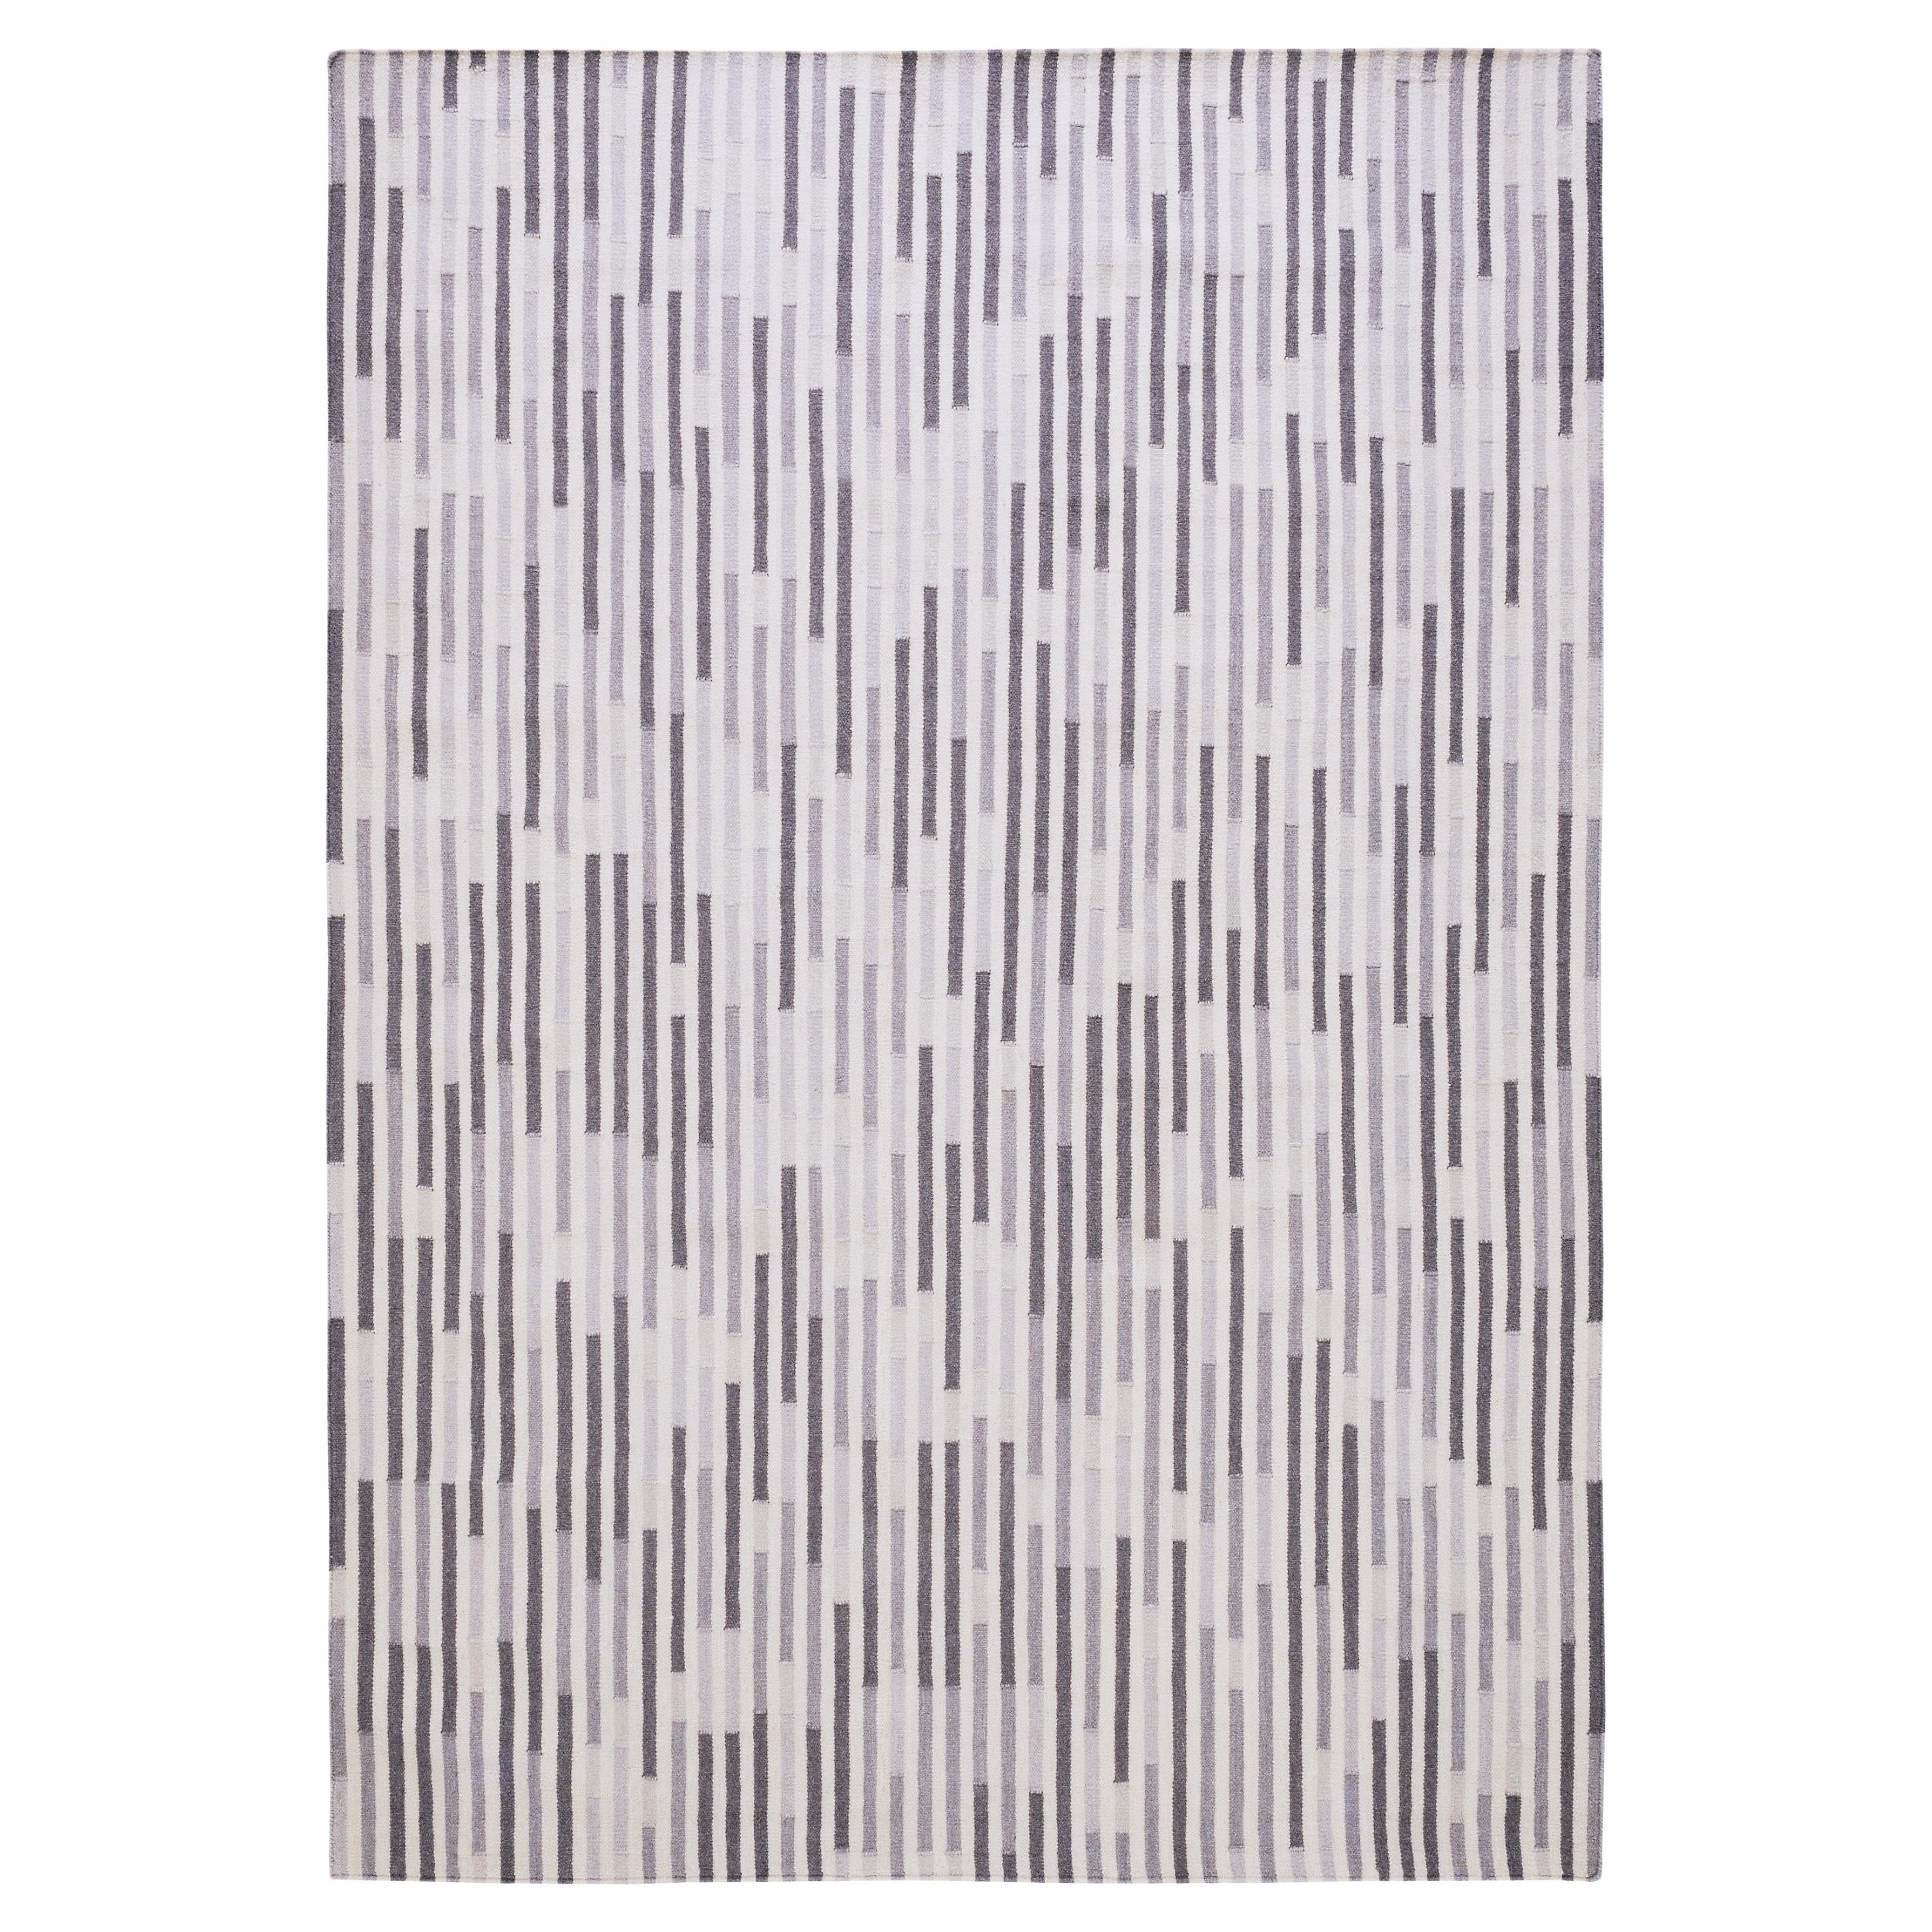 Tempo Uno - Kalt - Design Sommer Kelim Teppich Zeitgenössischer Teppich aus Wolle und Baumwolle flach